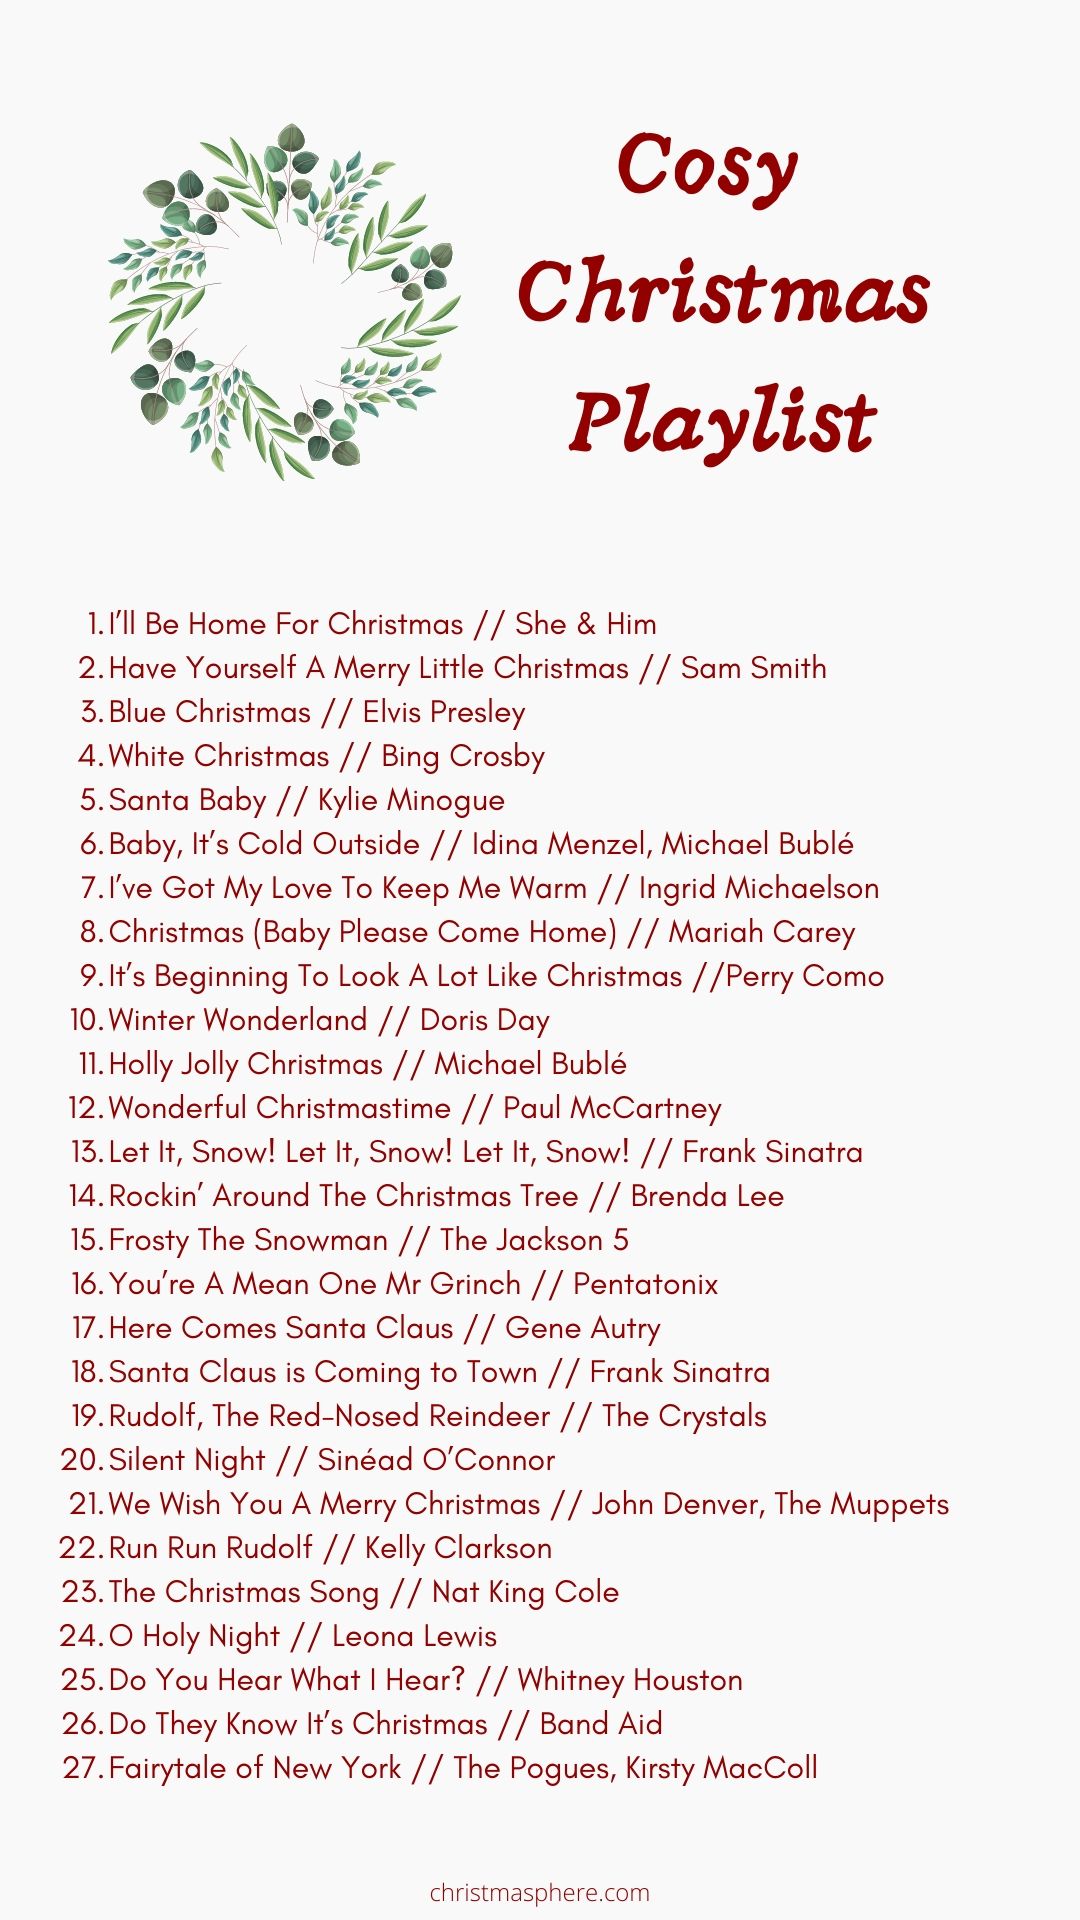 Cozy Christmas Playlist